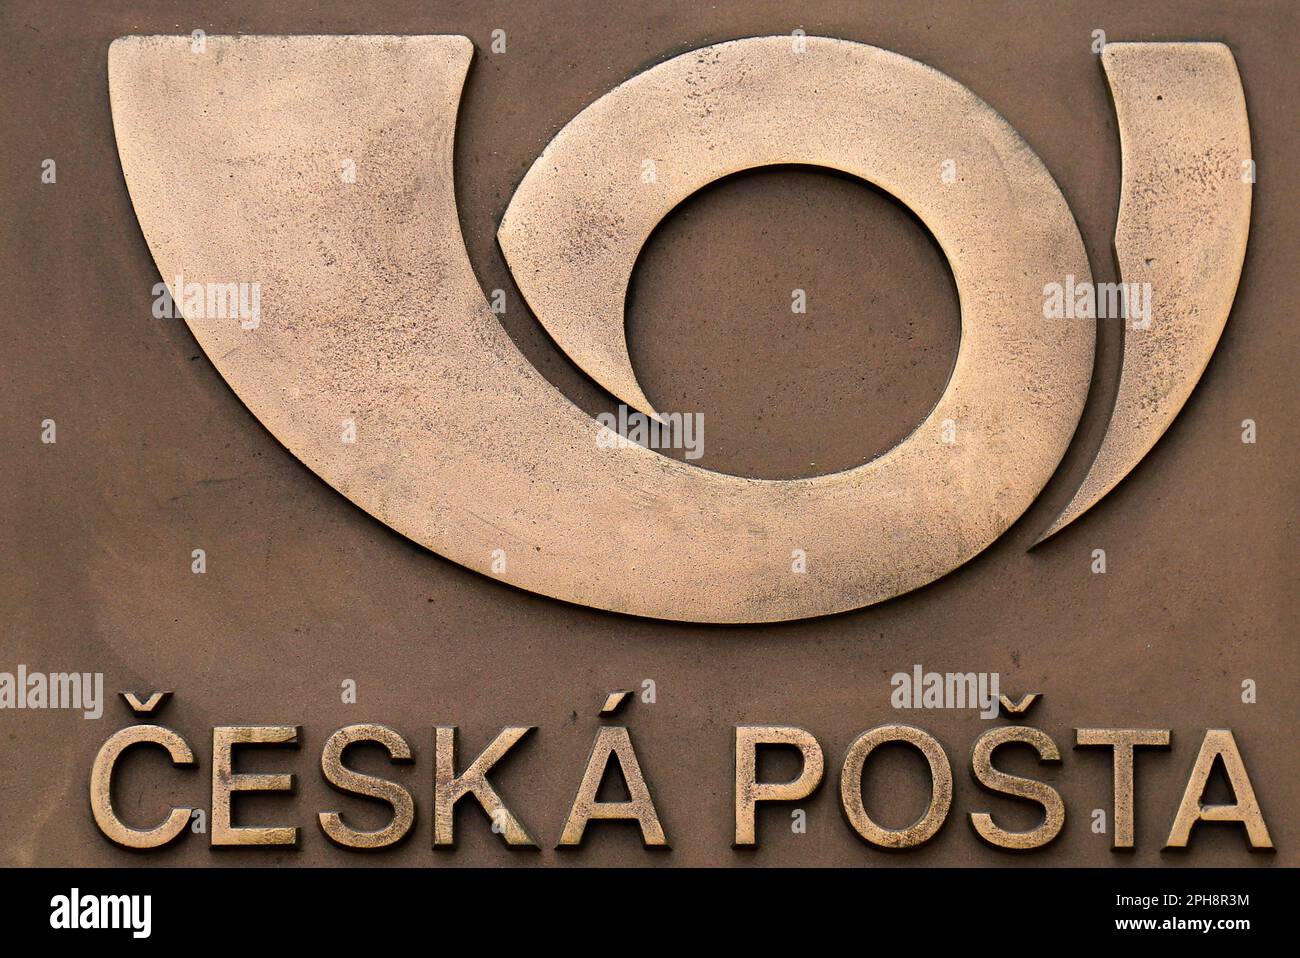 Un segno su piastra metallica, iscrizione in ceco - posta ceca, Cecoslovacco Commercial Bank, Postal Savings Bank.Postal logo, Repubblica Ceca, Castello di Praga Foto Stock